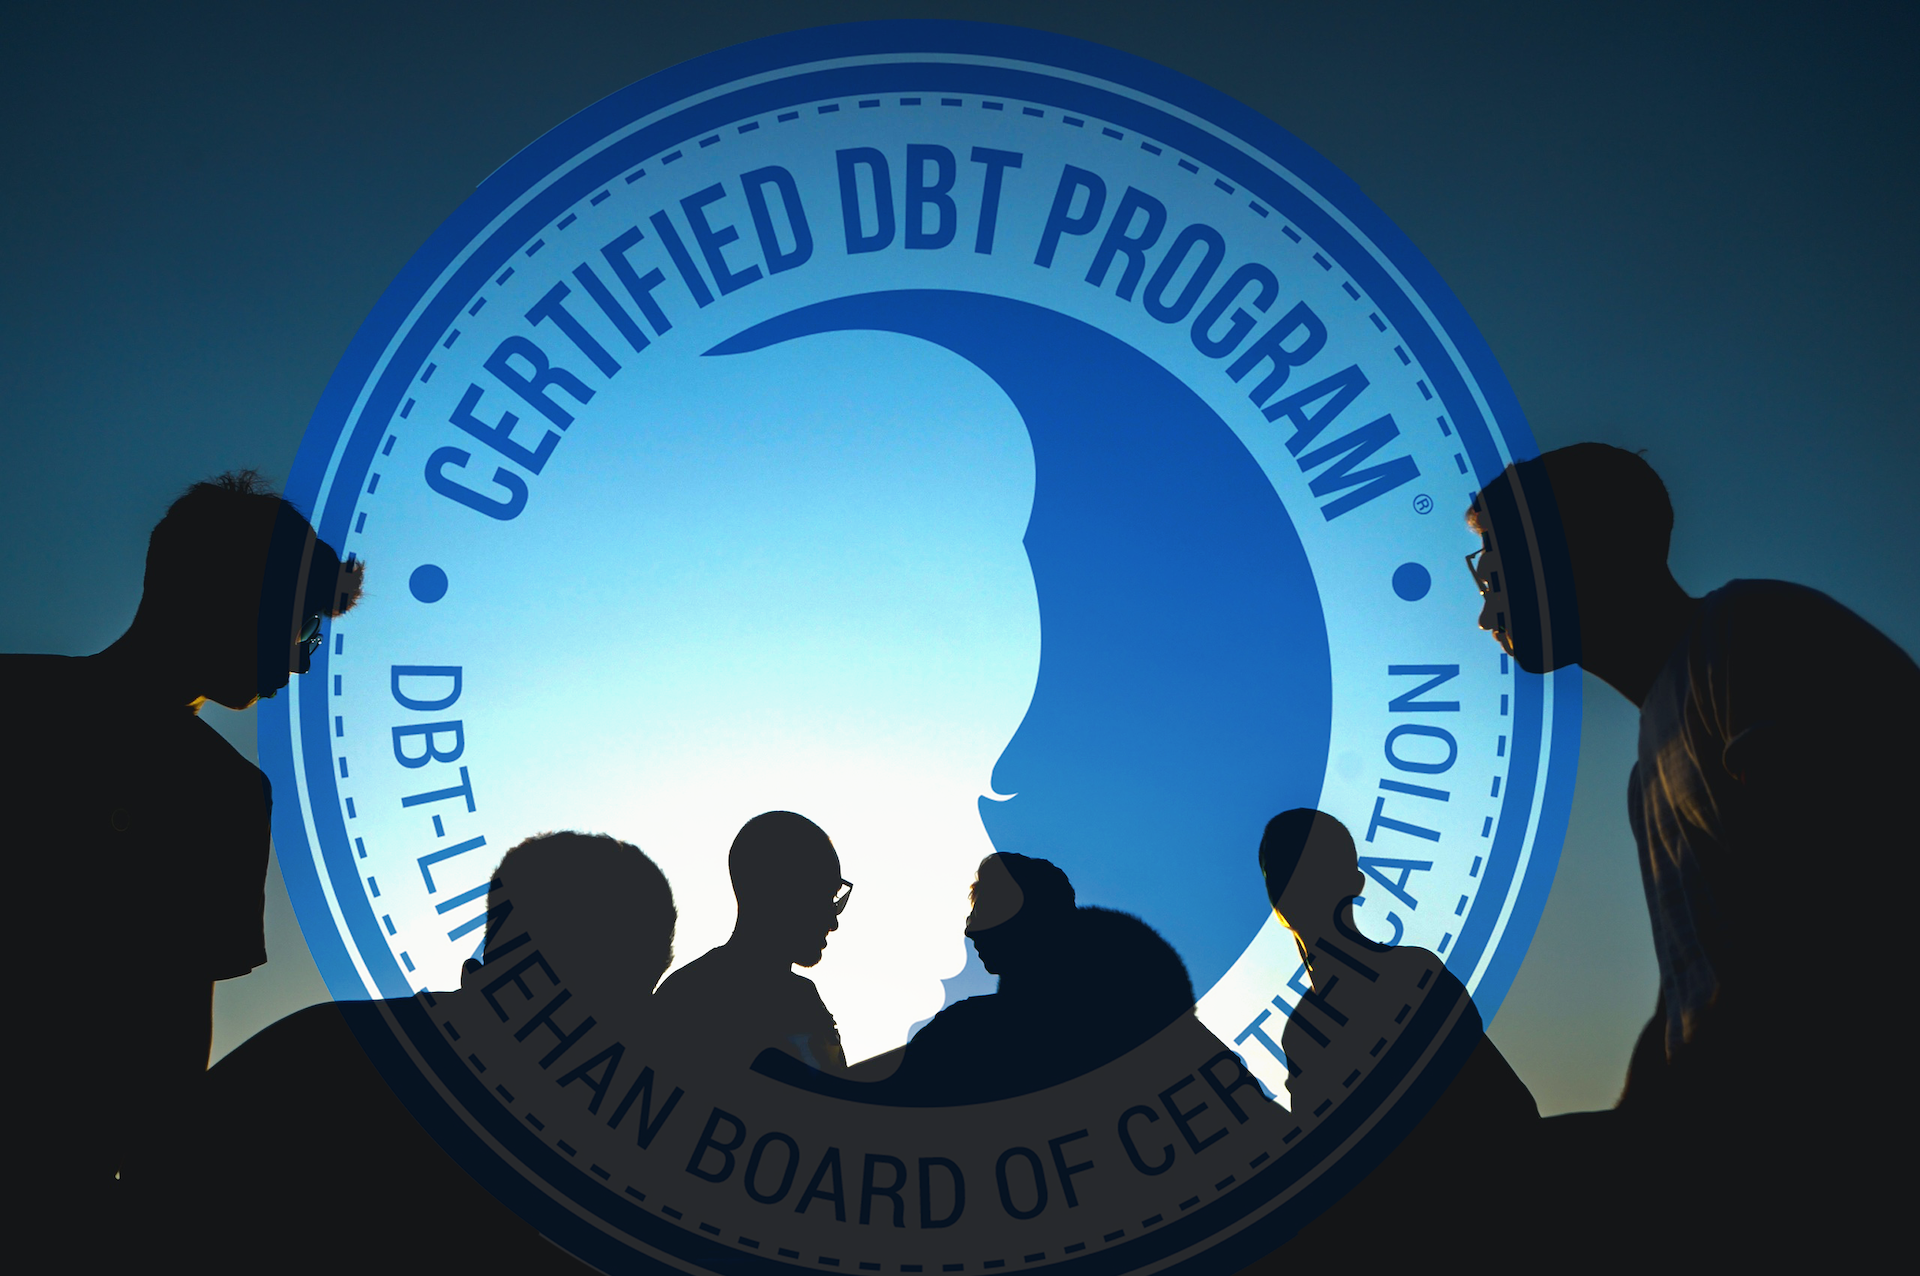 Program Certification Committee